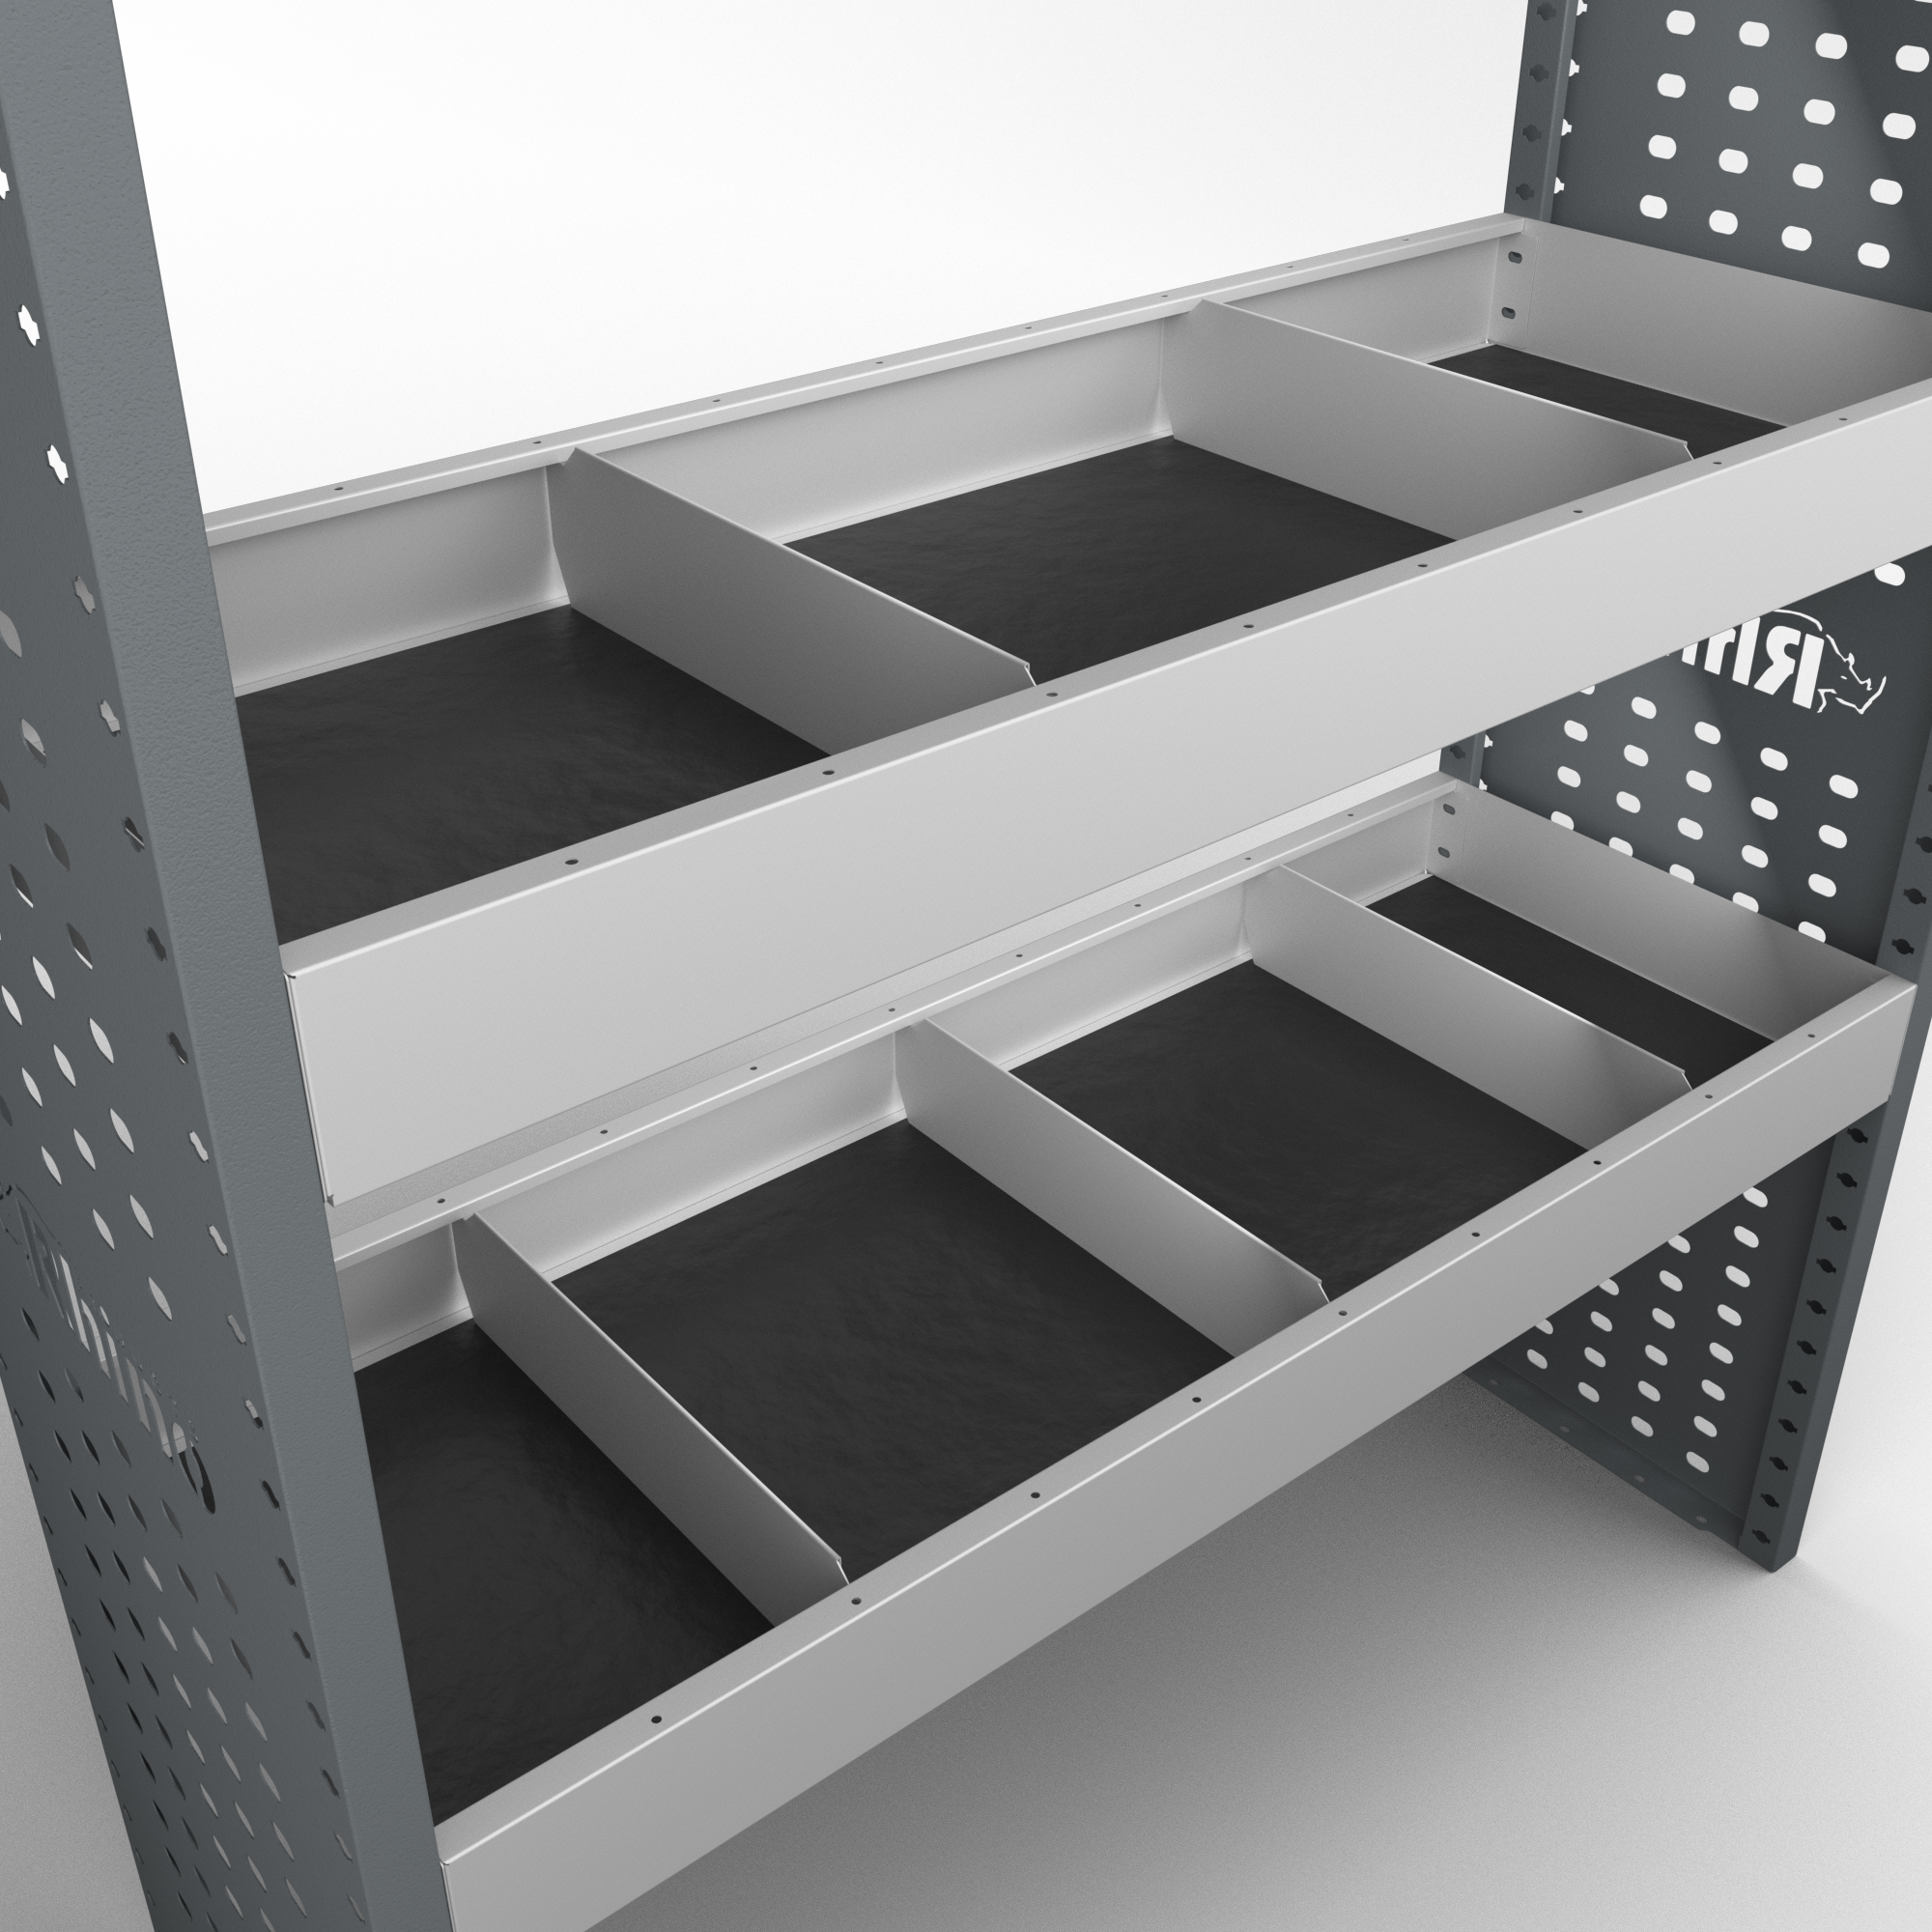 Shelf Dividers for Rhino MR4 Internal Van Racking  - Fits the 380mm Depth Shelves - 5